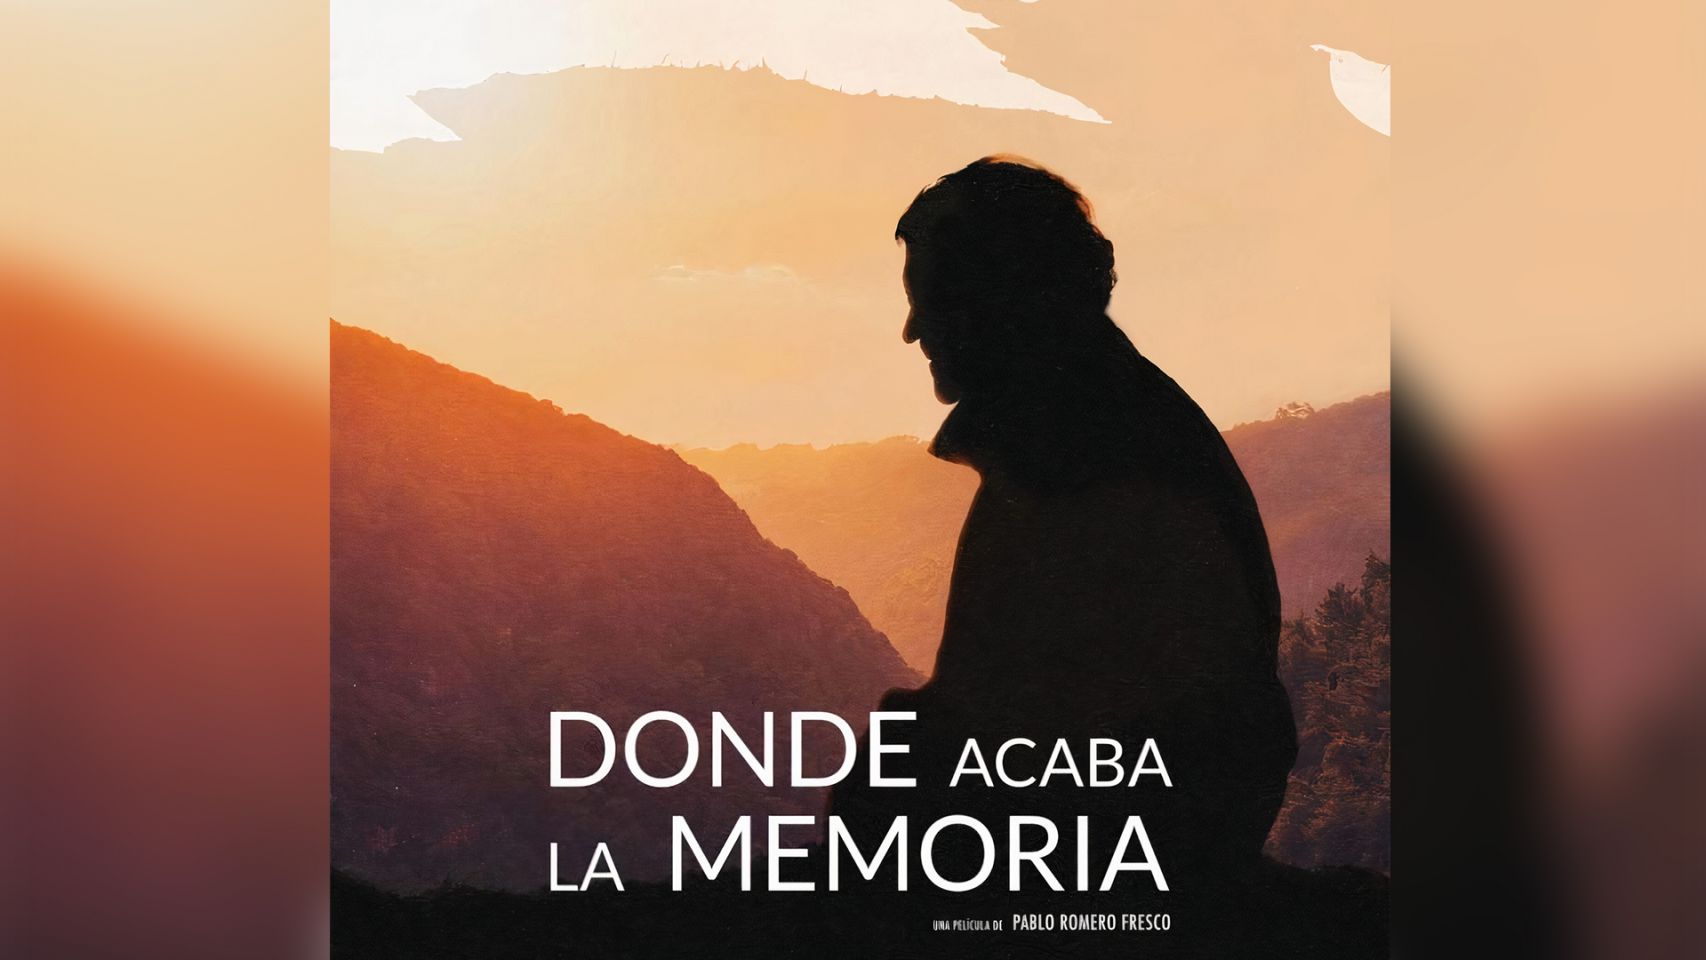 Cartel de documental "Donde acaba la memoria".